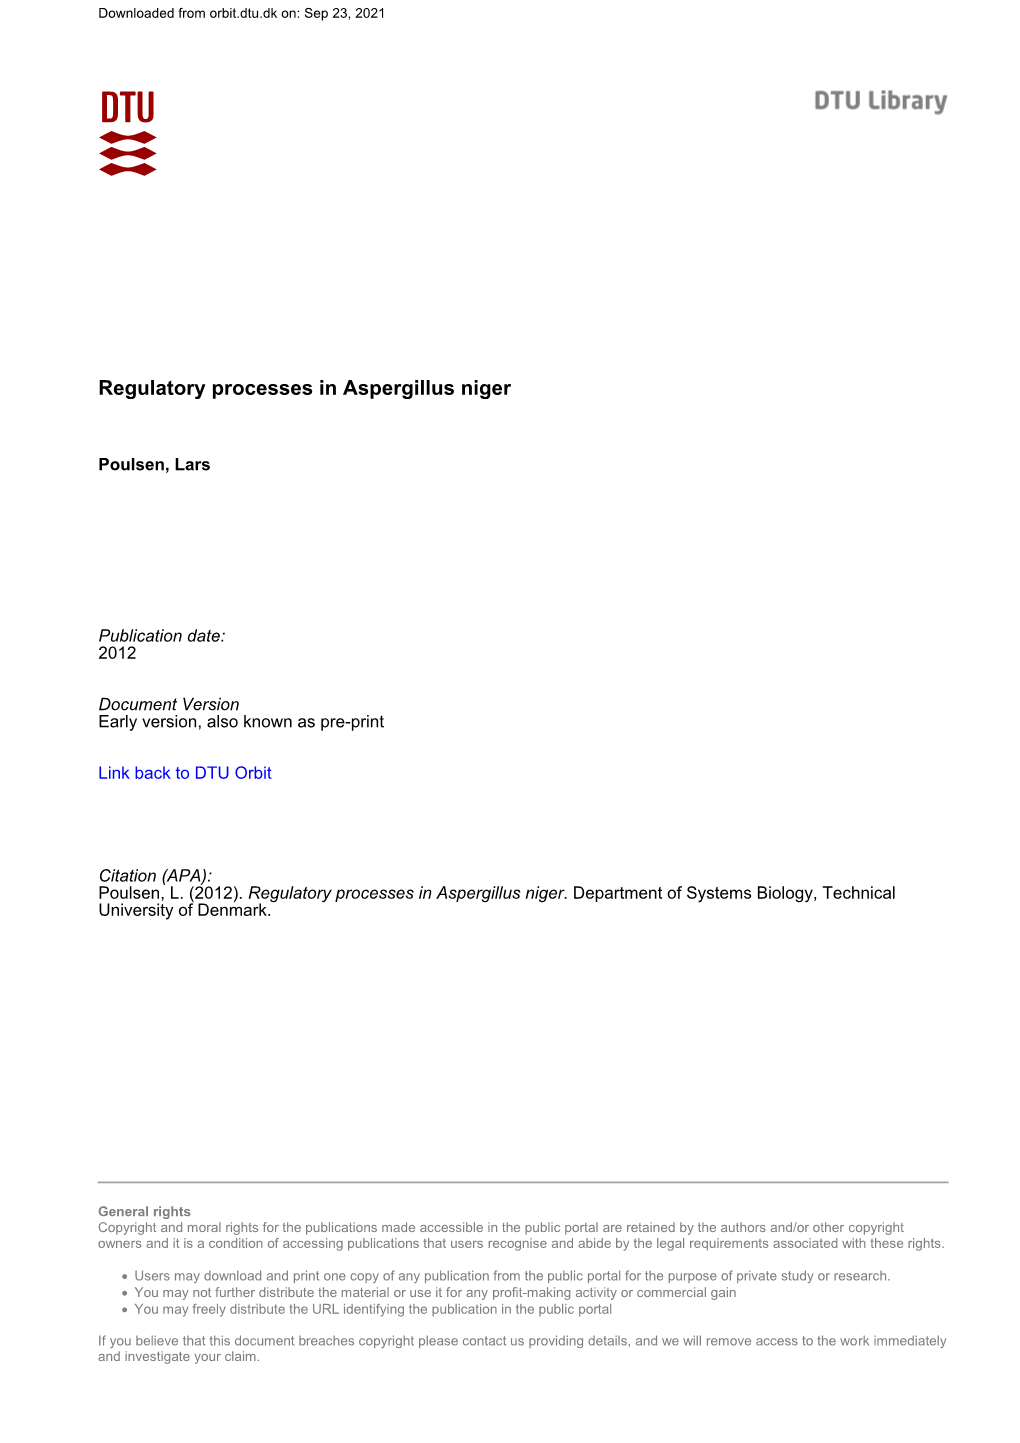 Regulatory Processes in Aspergillus Niger